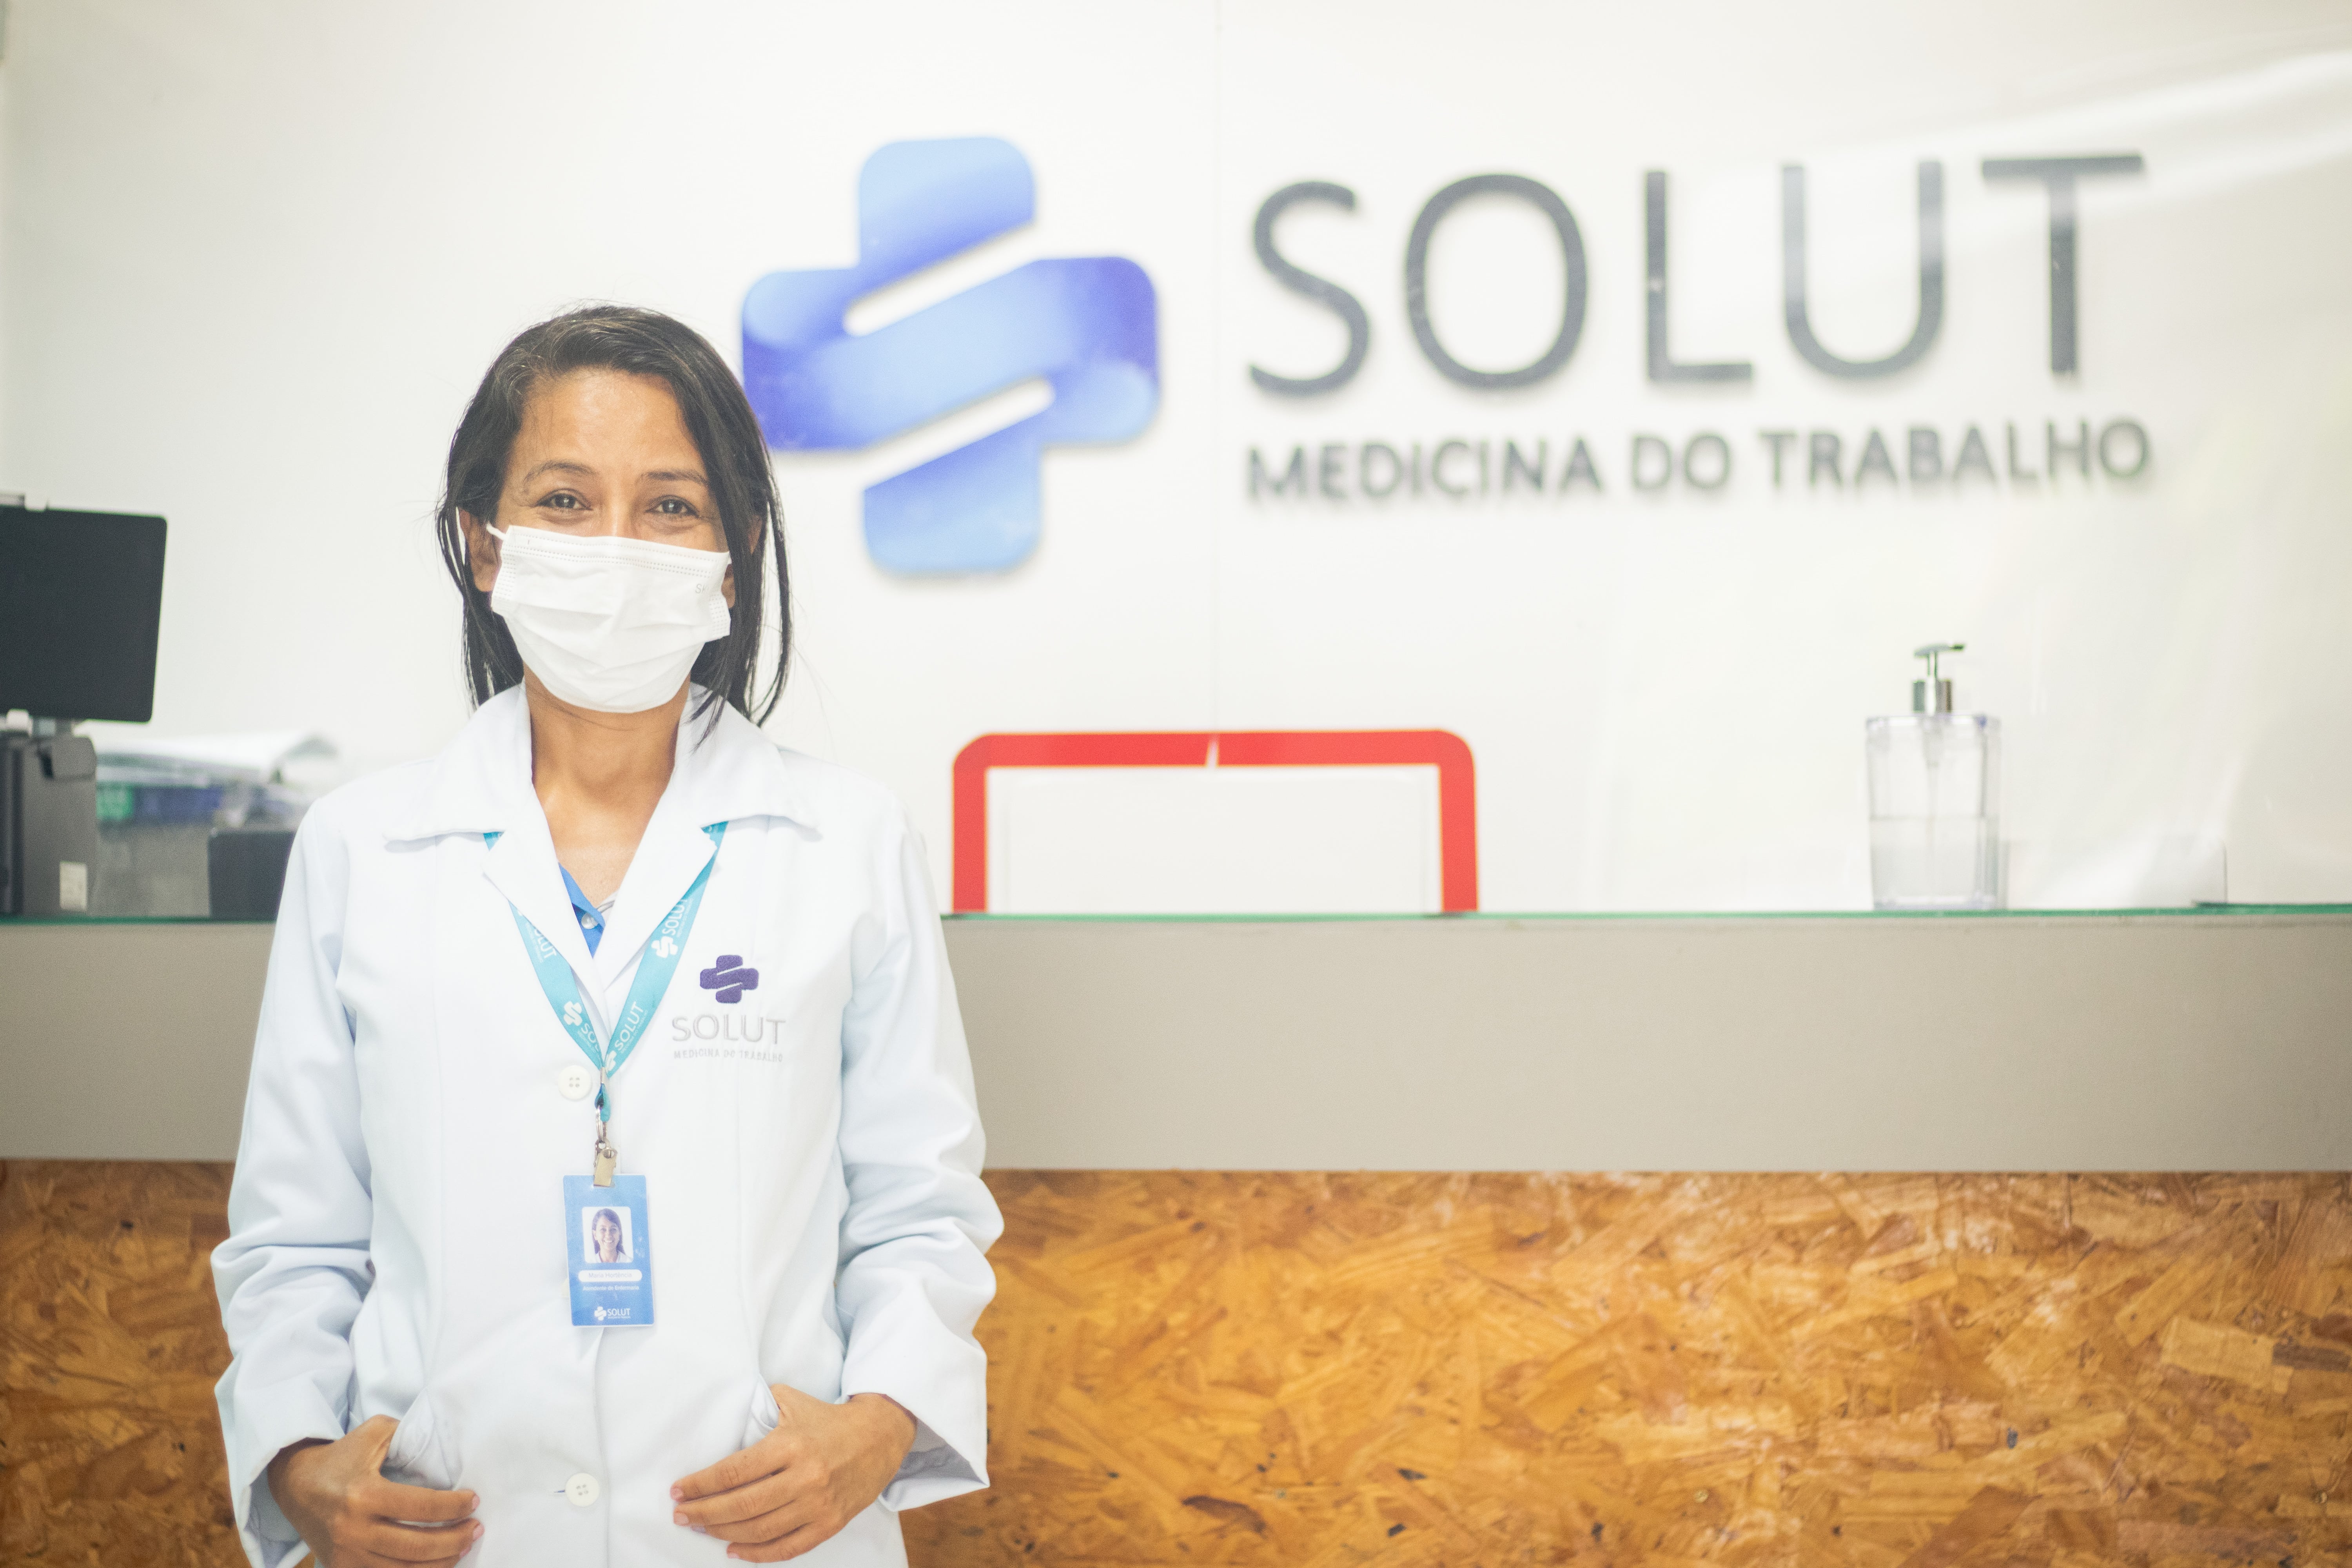 Colaboradora da Solut em frente a logo da clínica